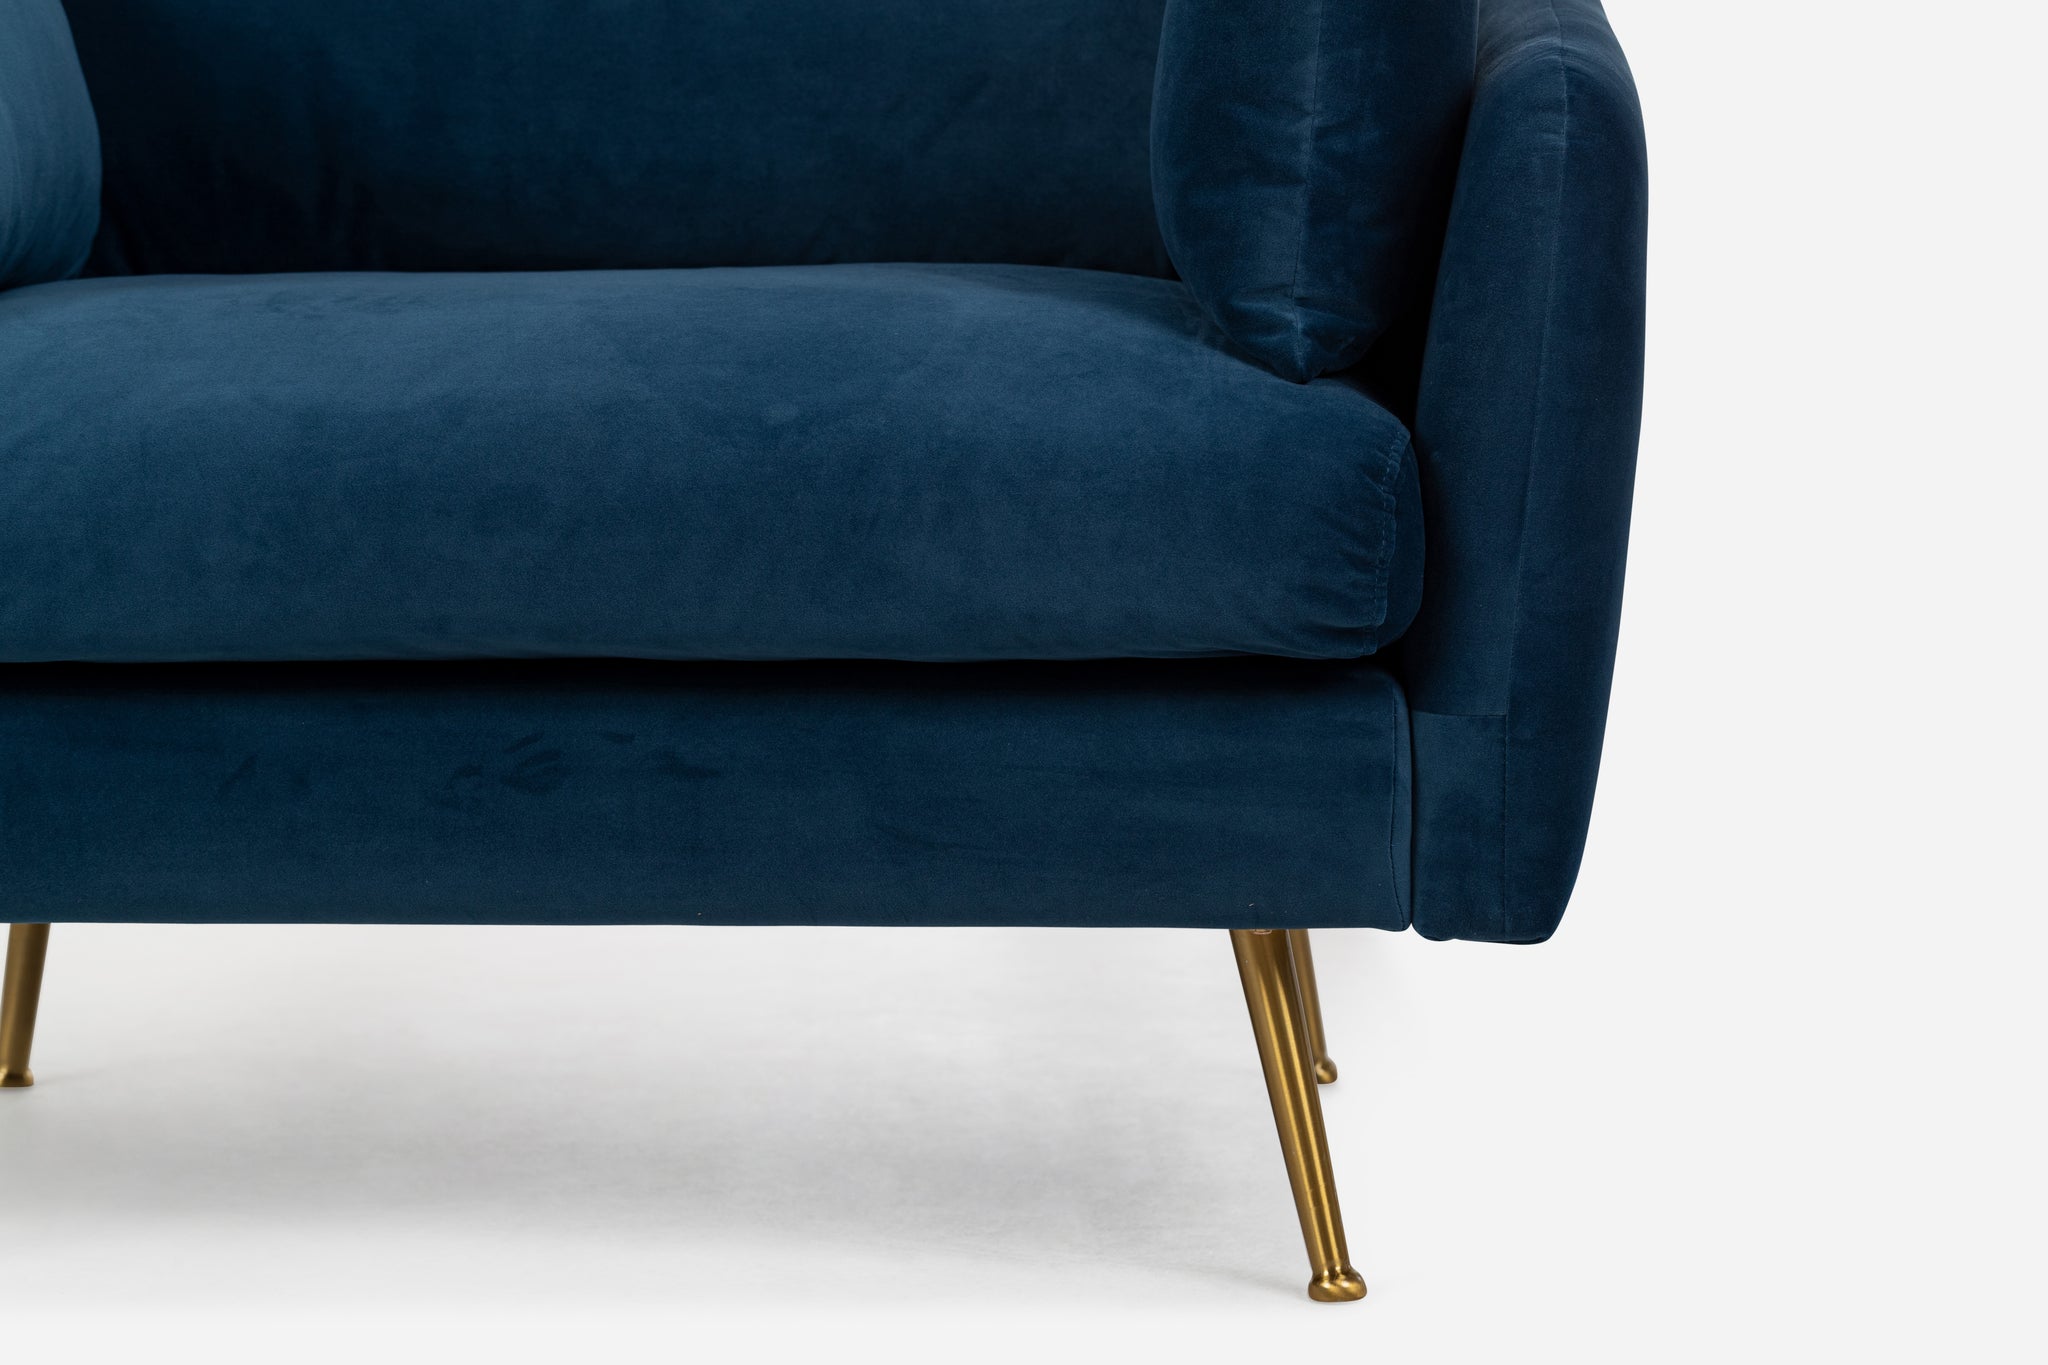 park armchair shown in blue velvet with gold legs